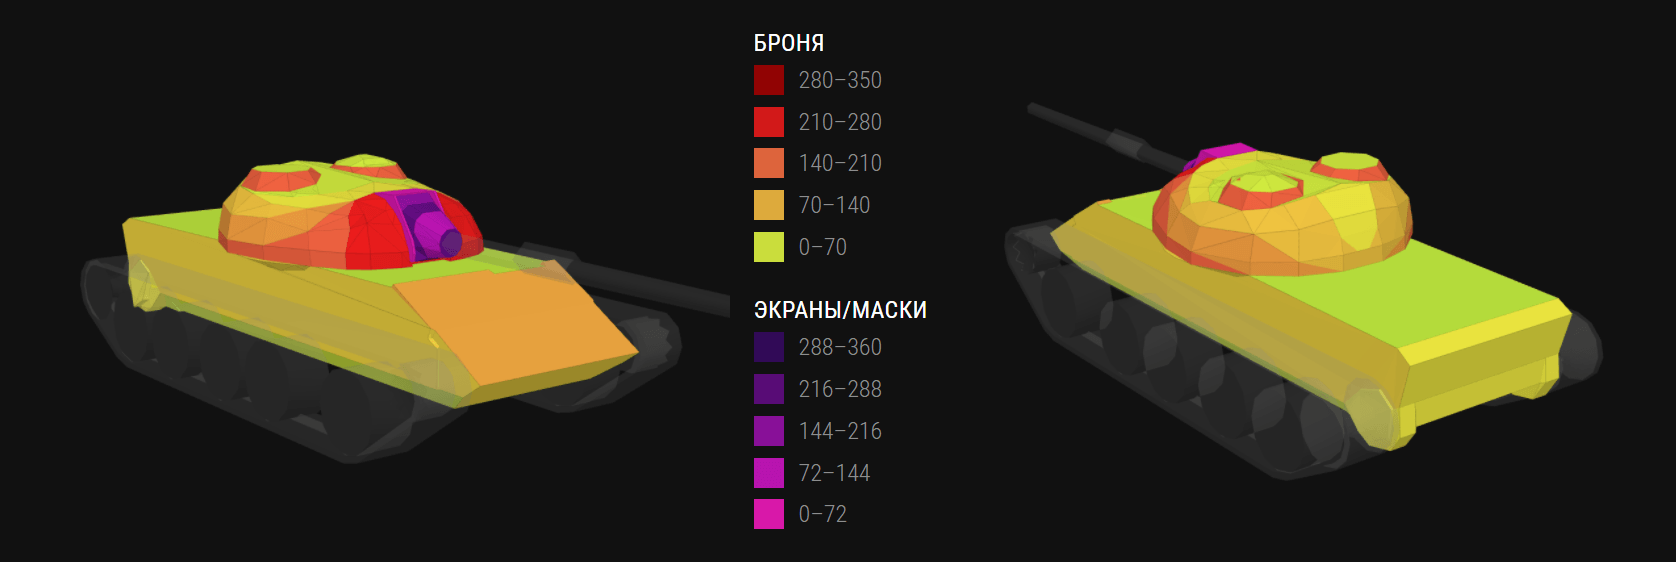 Премиумный средний танк 121B в World of Tanks Blitz. Обзор характеристик, параметров, преимуществ и тактик игры